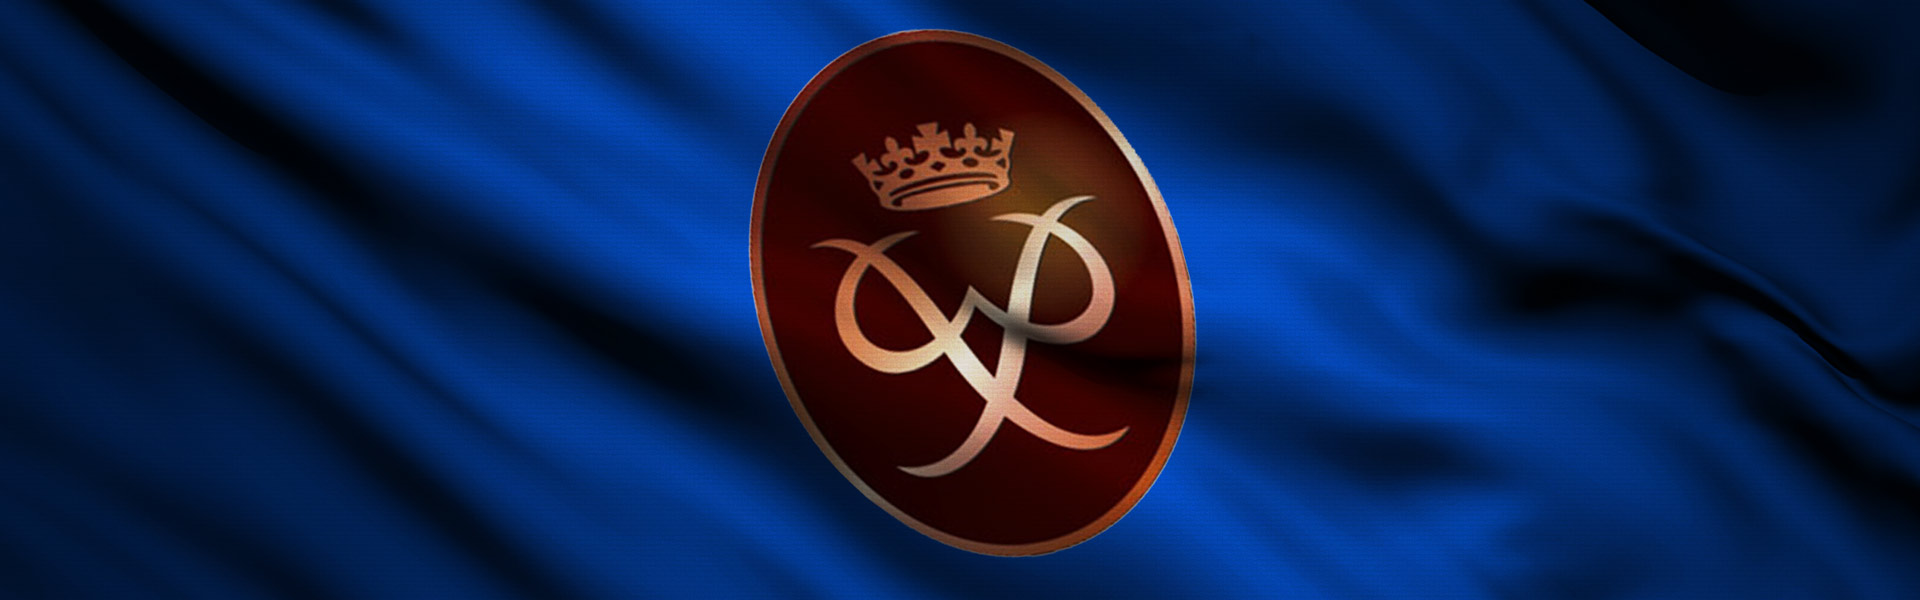 duke of edinburgh bronze award logo printed on blue farbric